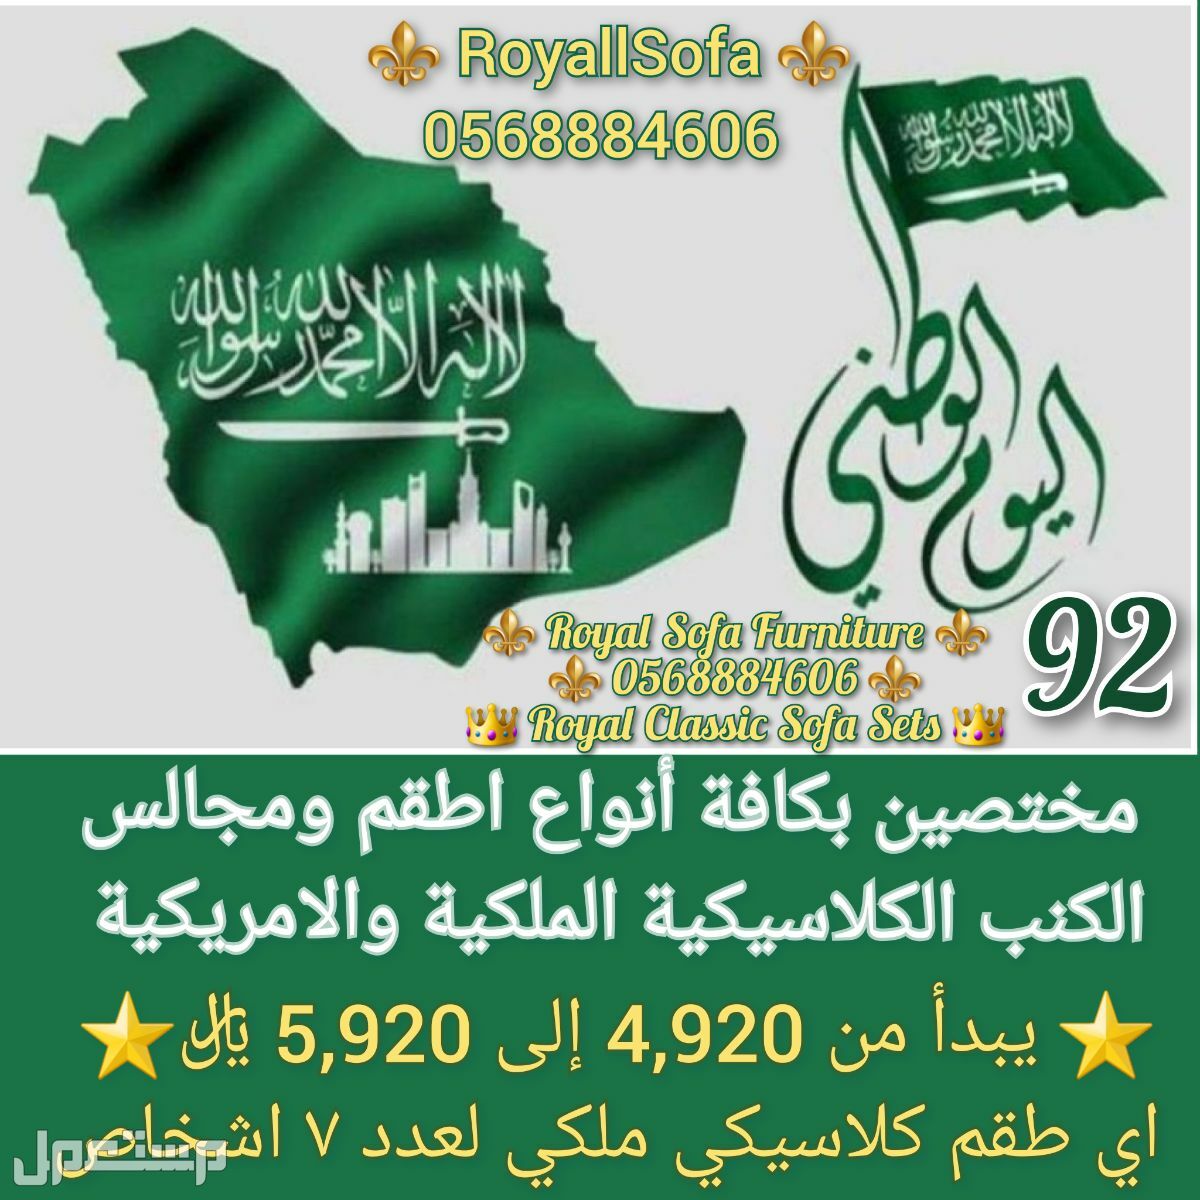 عروض اليوم الوطني السعودي  ماركة RoyallSofa  في الرياض بسعر 4920 ريال سعودي